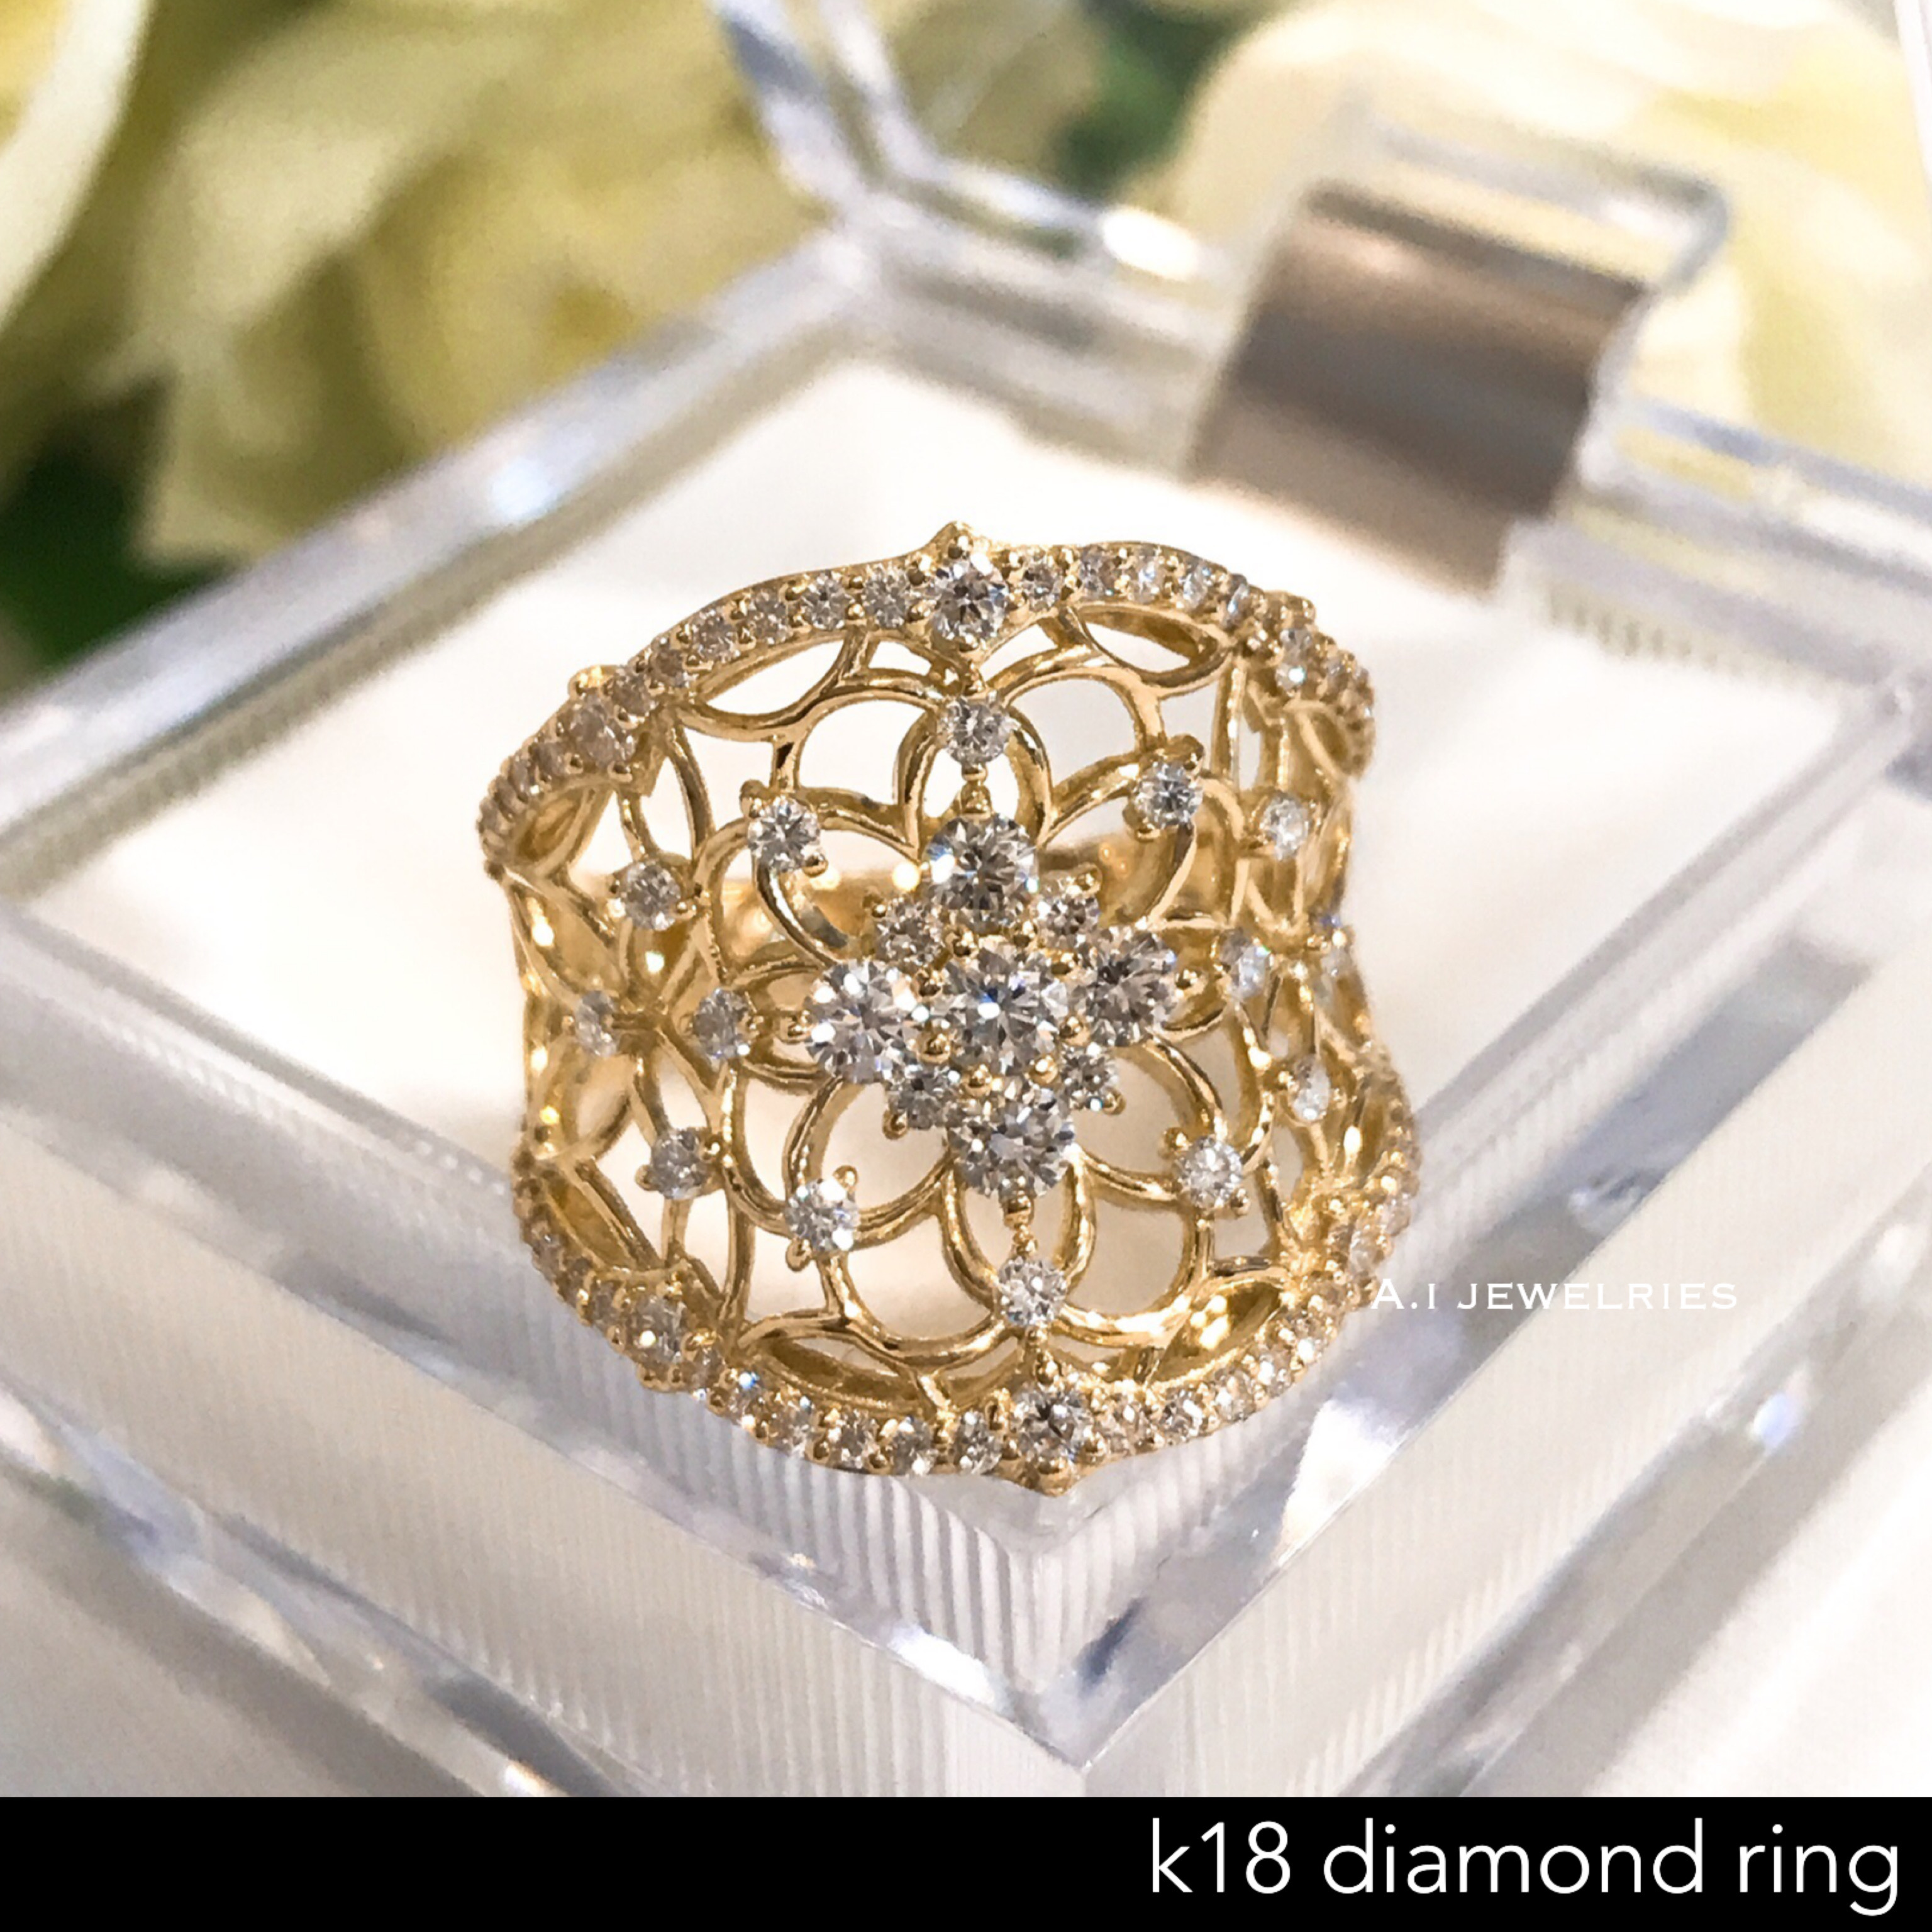 リング 18金 ダイヤ k18 天然 ダイヤモンド リング / k18 diamond ring | A.I JEWELRIES / エイ